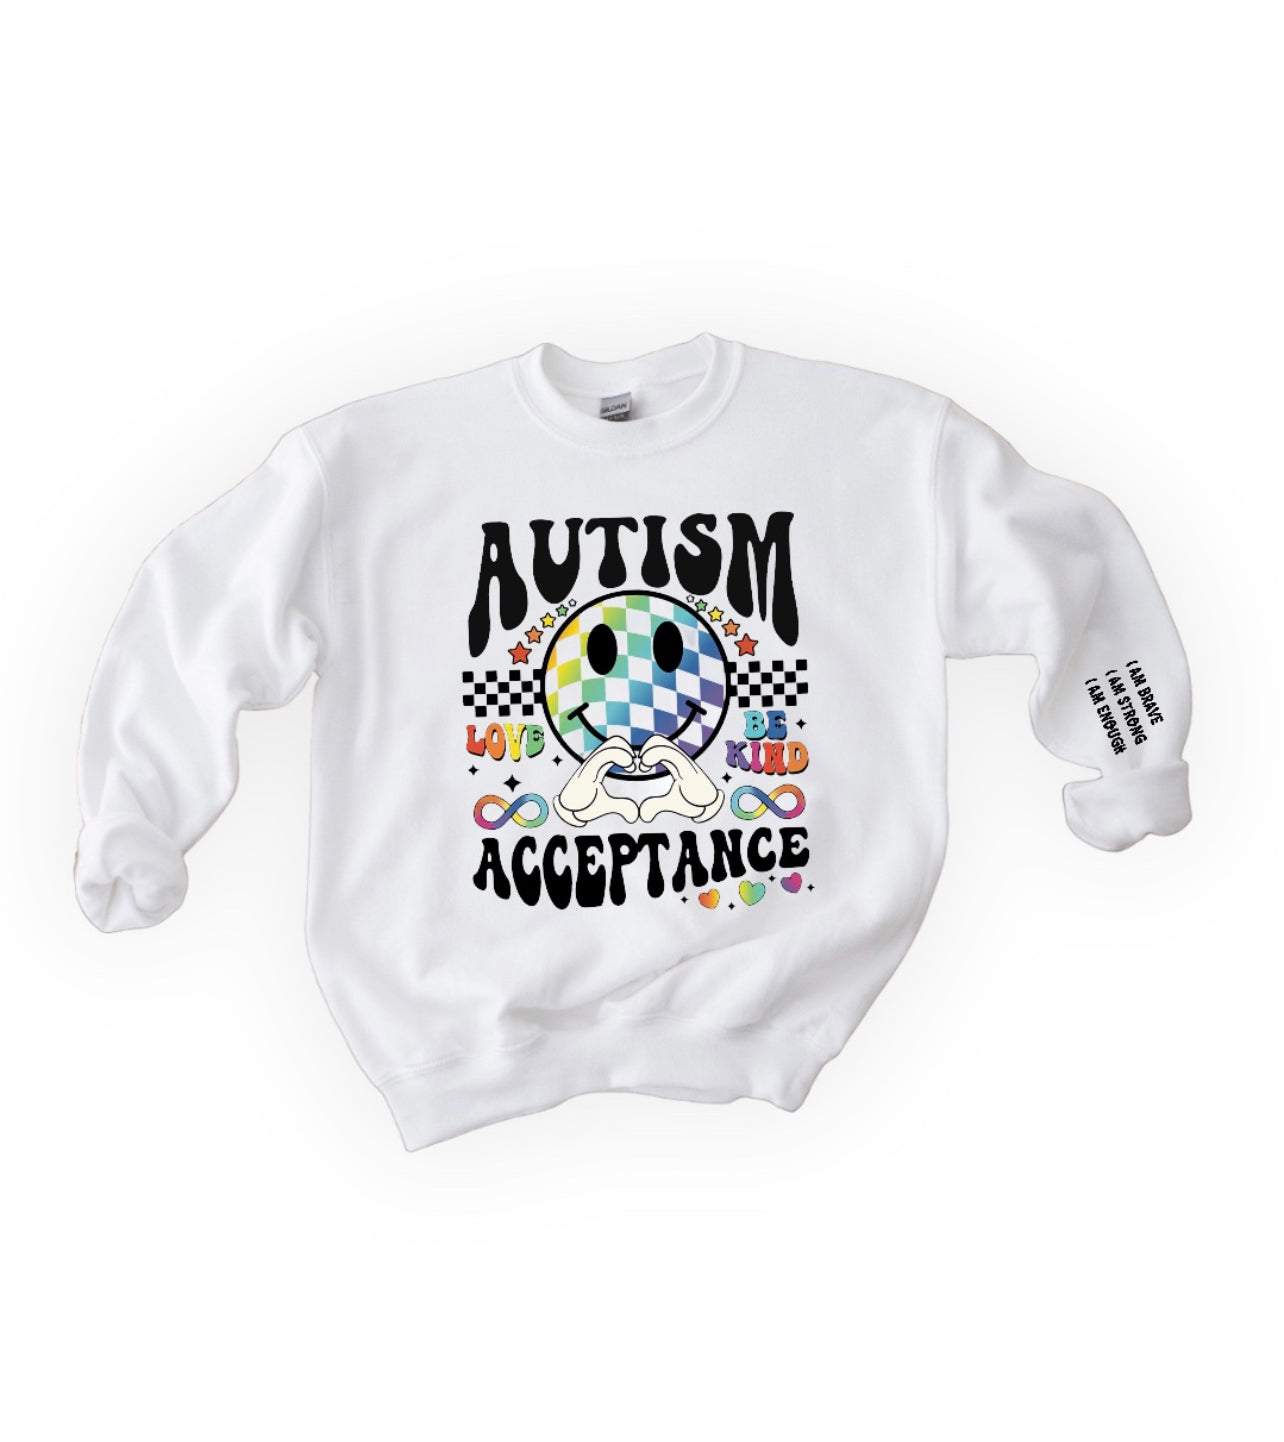 Autism Acceptance.